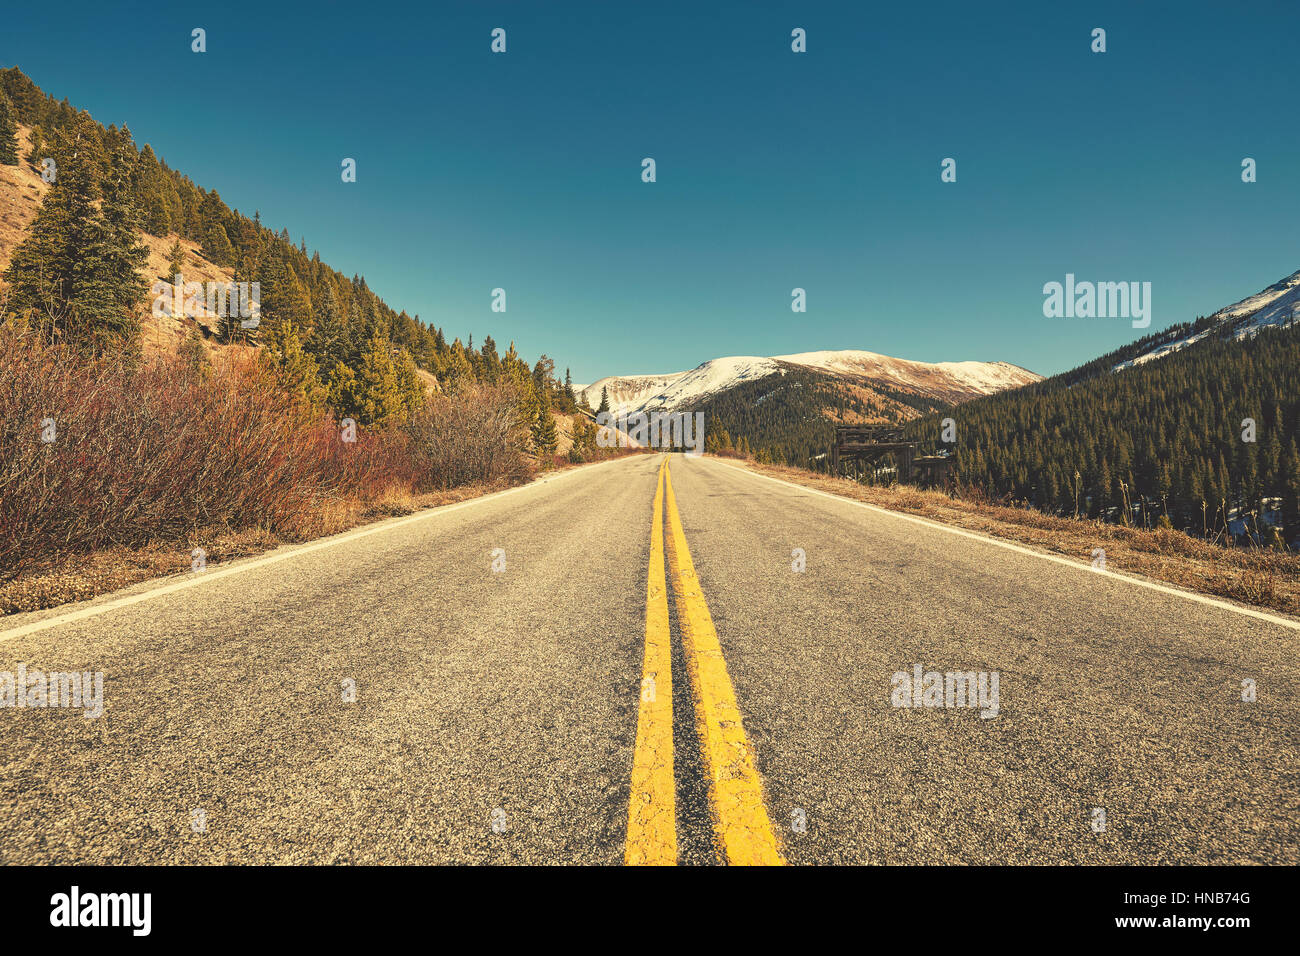 Tonos Retro pintoresca carretera de montaña, viajes concepto imagen, Colorado, Estados Unidos. Foto de stock